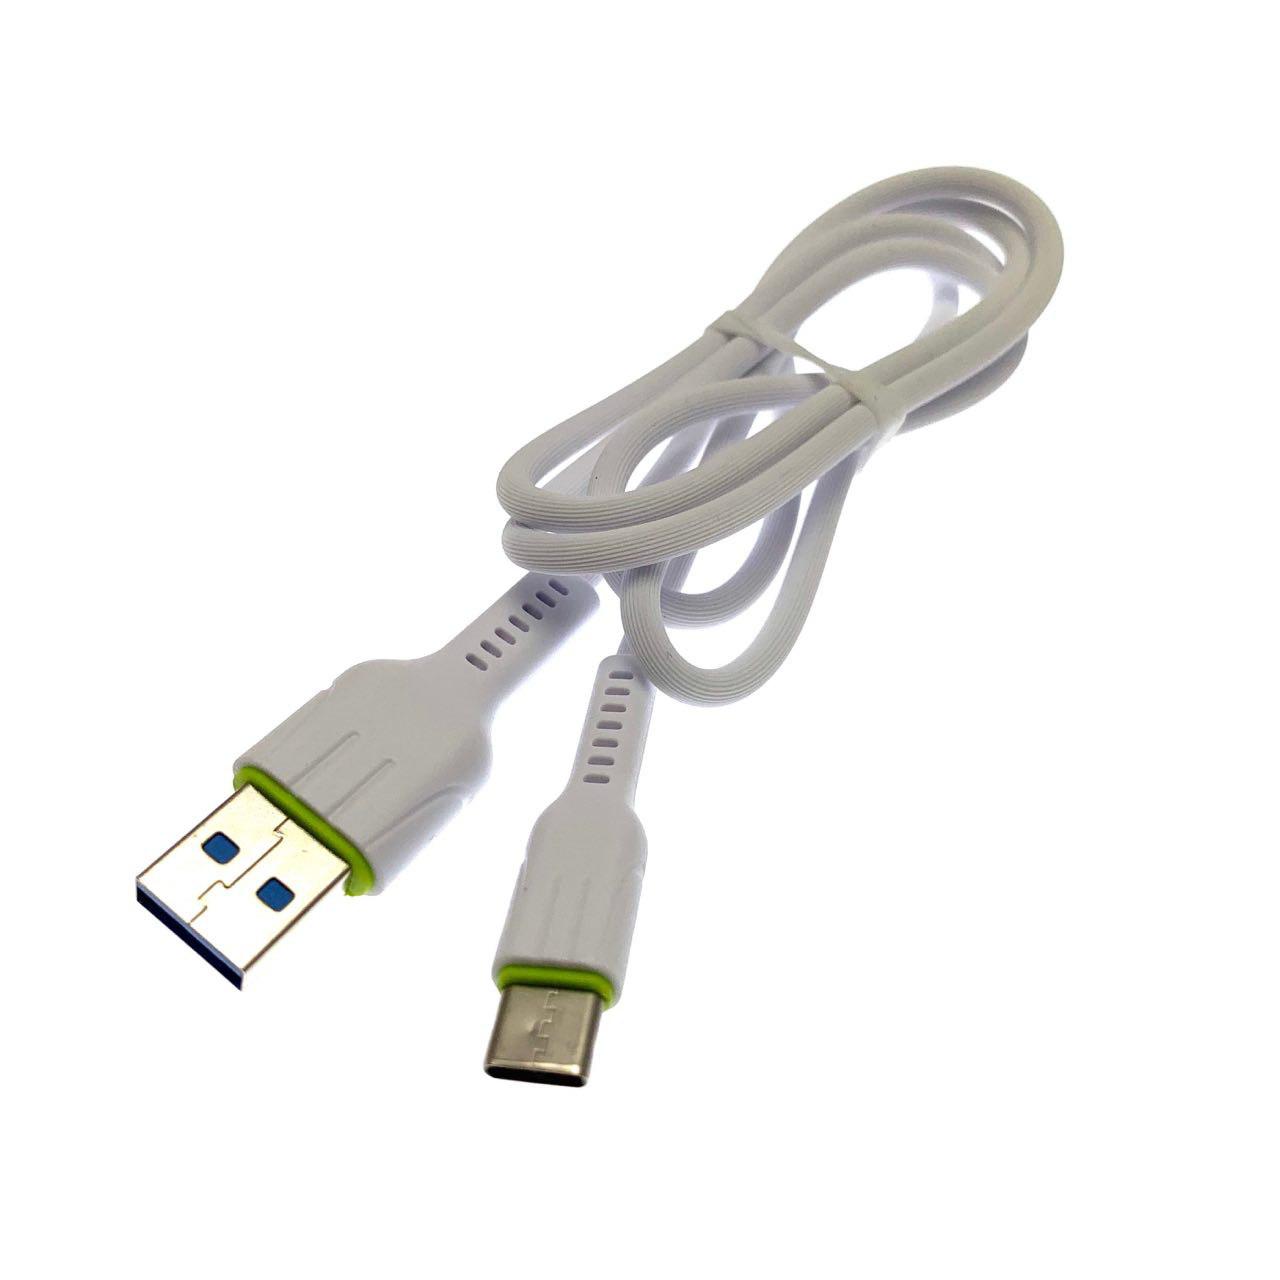 USB Дата-кабель "R30" Type-C USB в силиконовой оболочке, длина 1 метр, цвет белый, полоски.